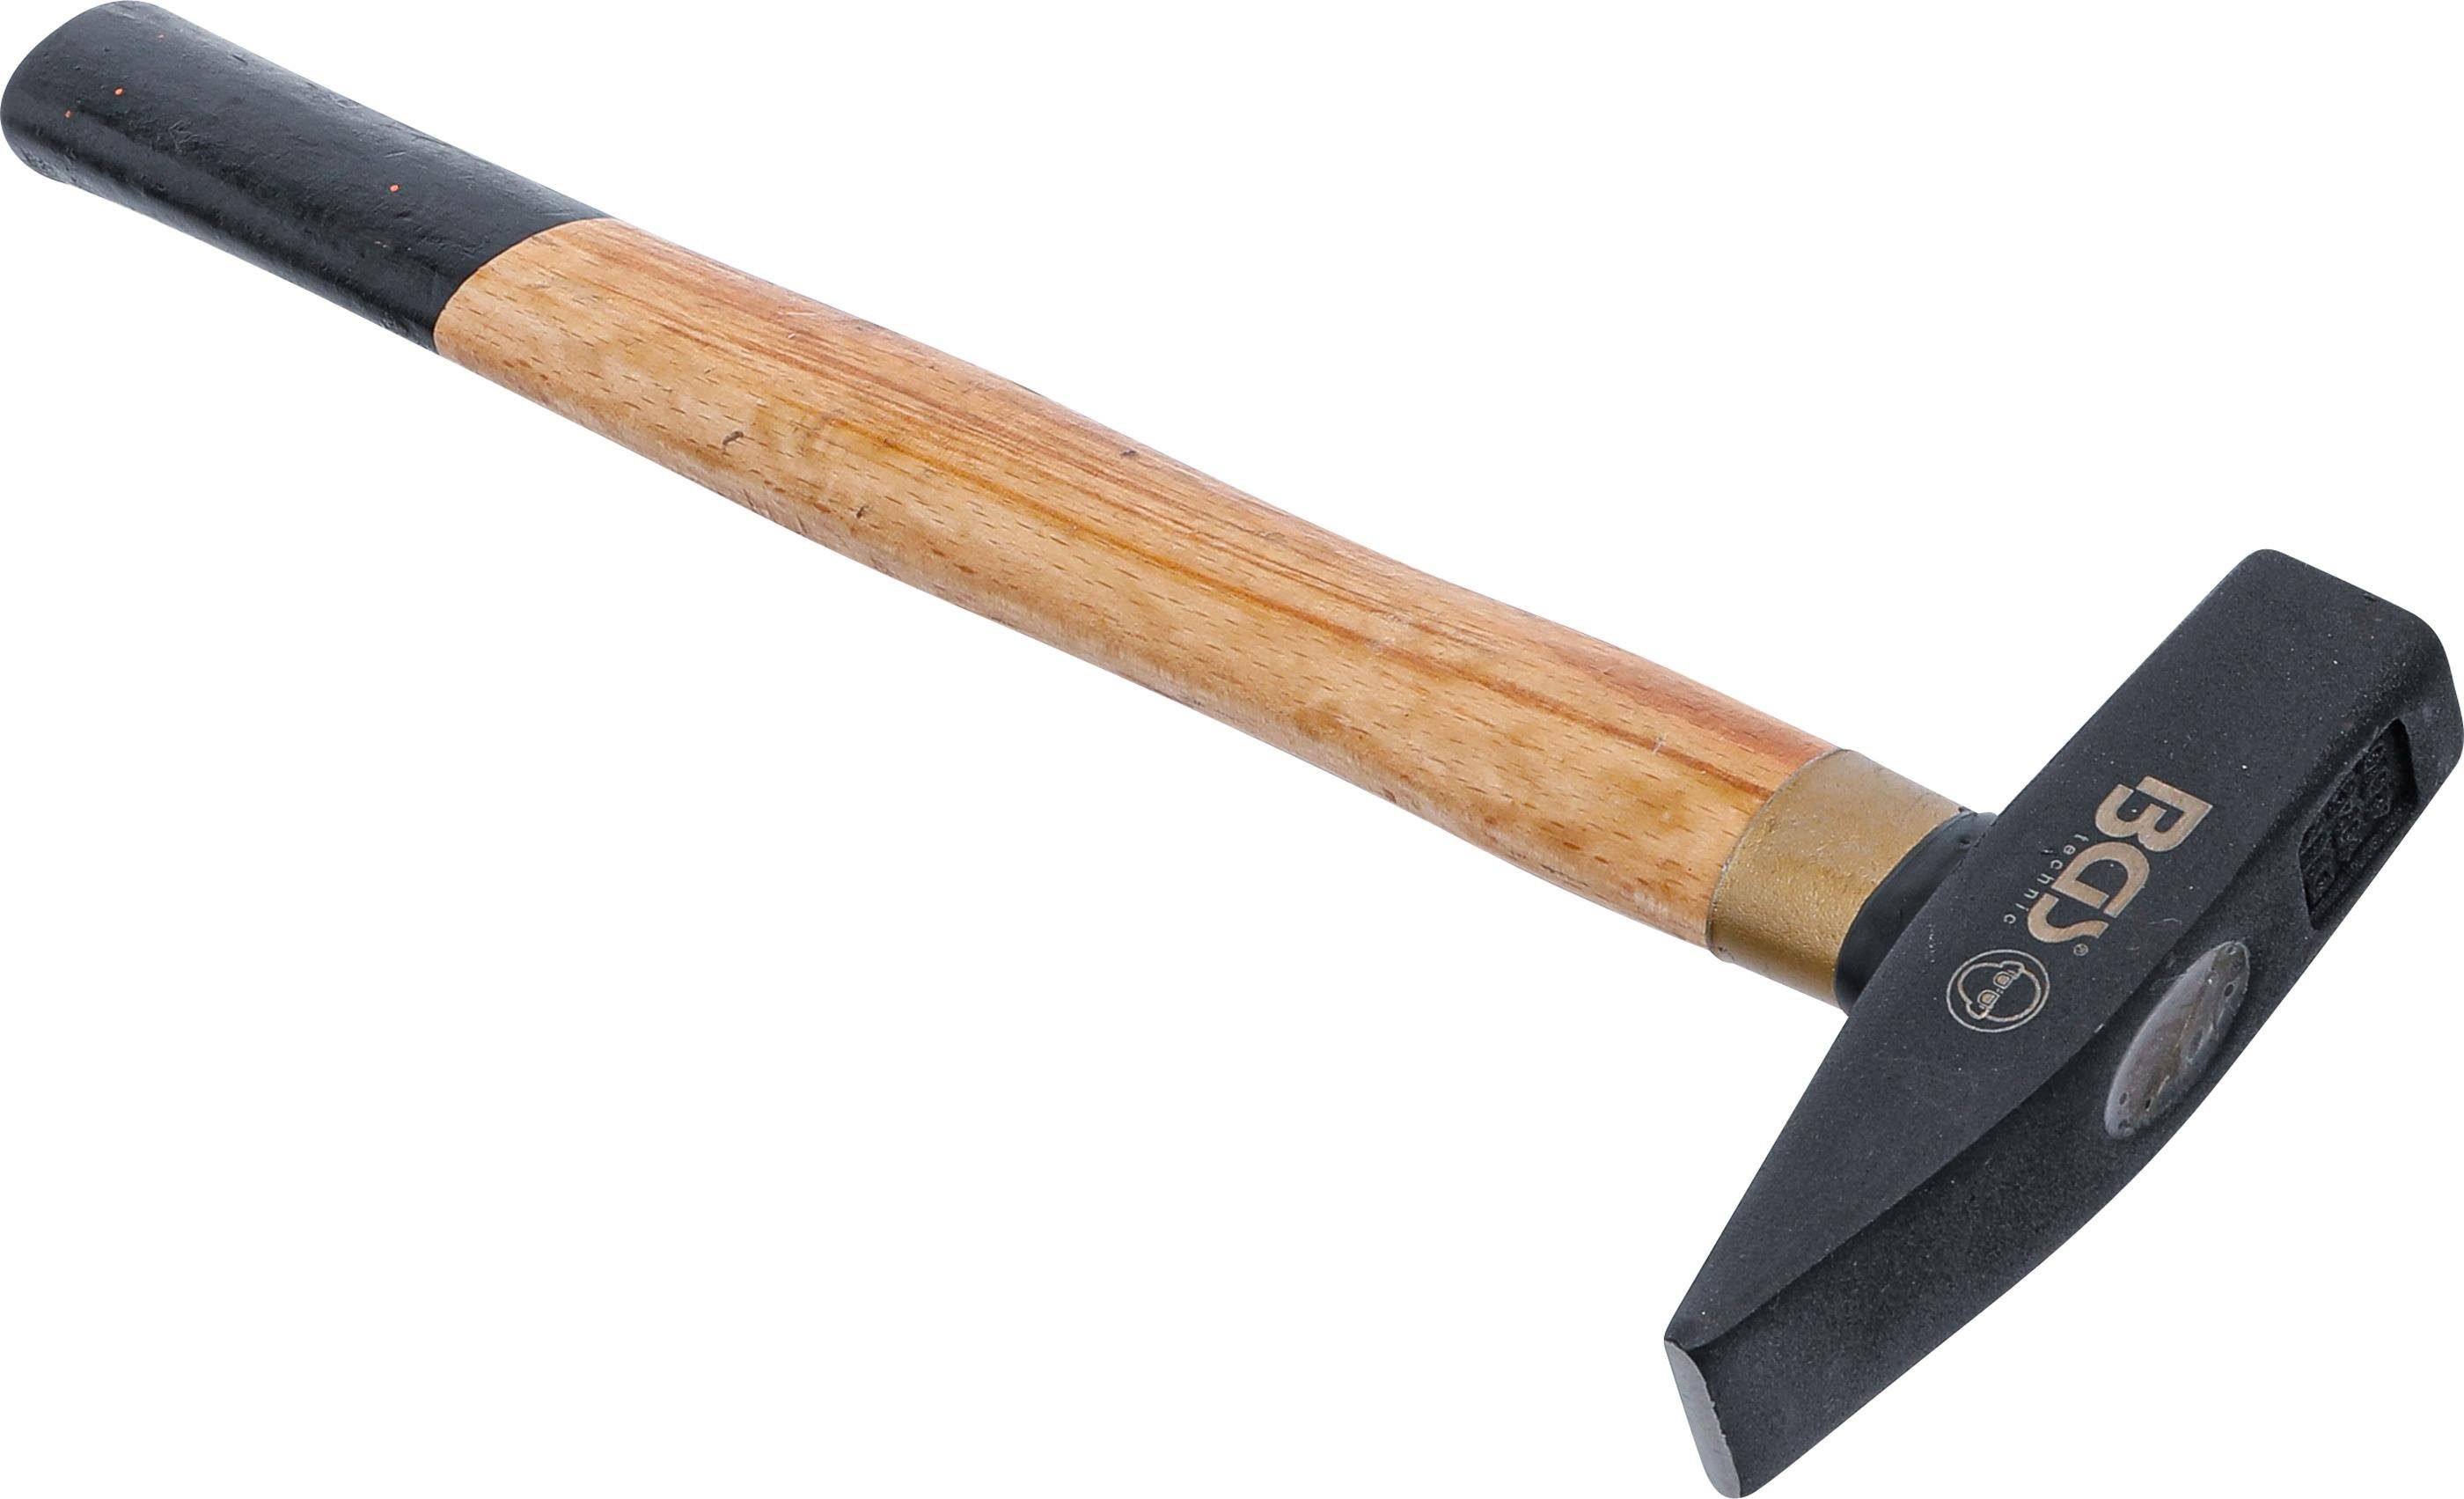 BGS technic Hammer Schlosserhammer, Holz-Stiel, 1041, g DIN 400